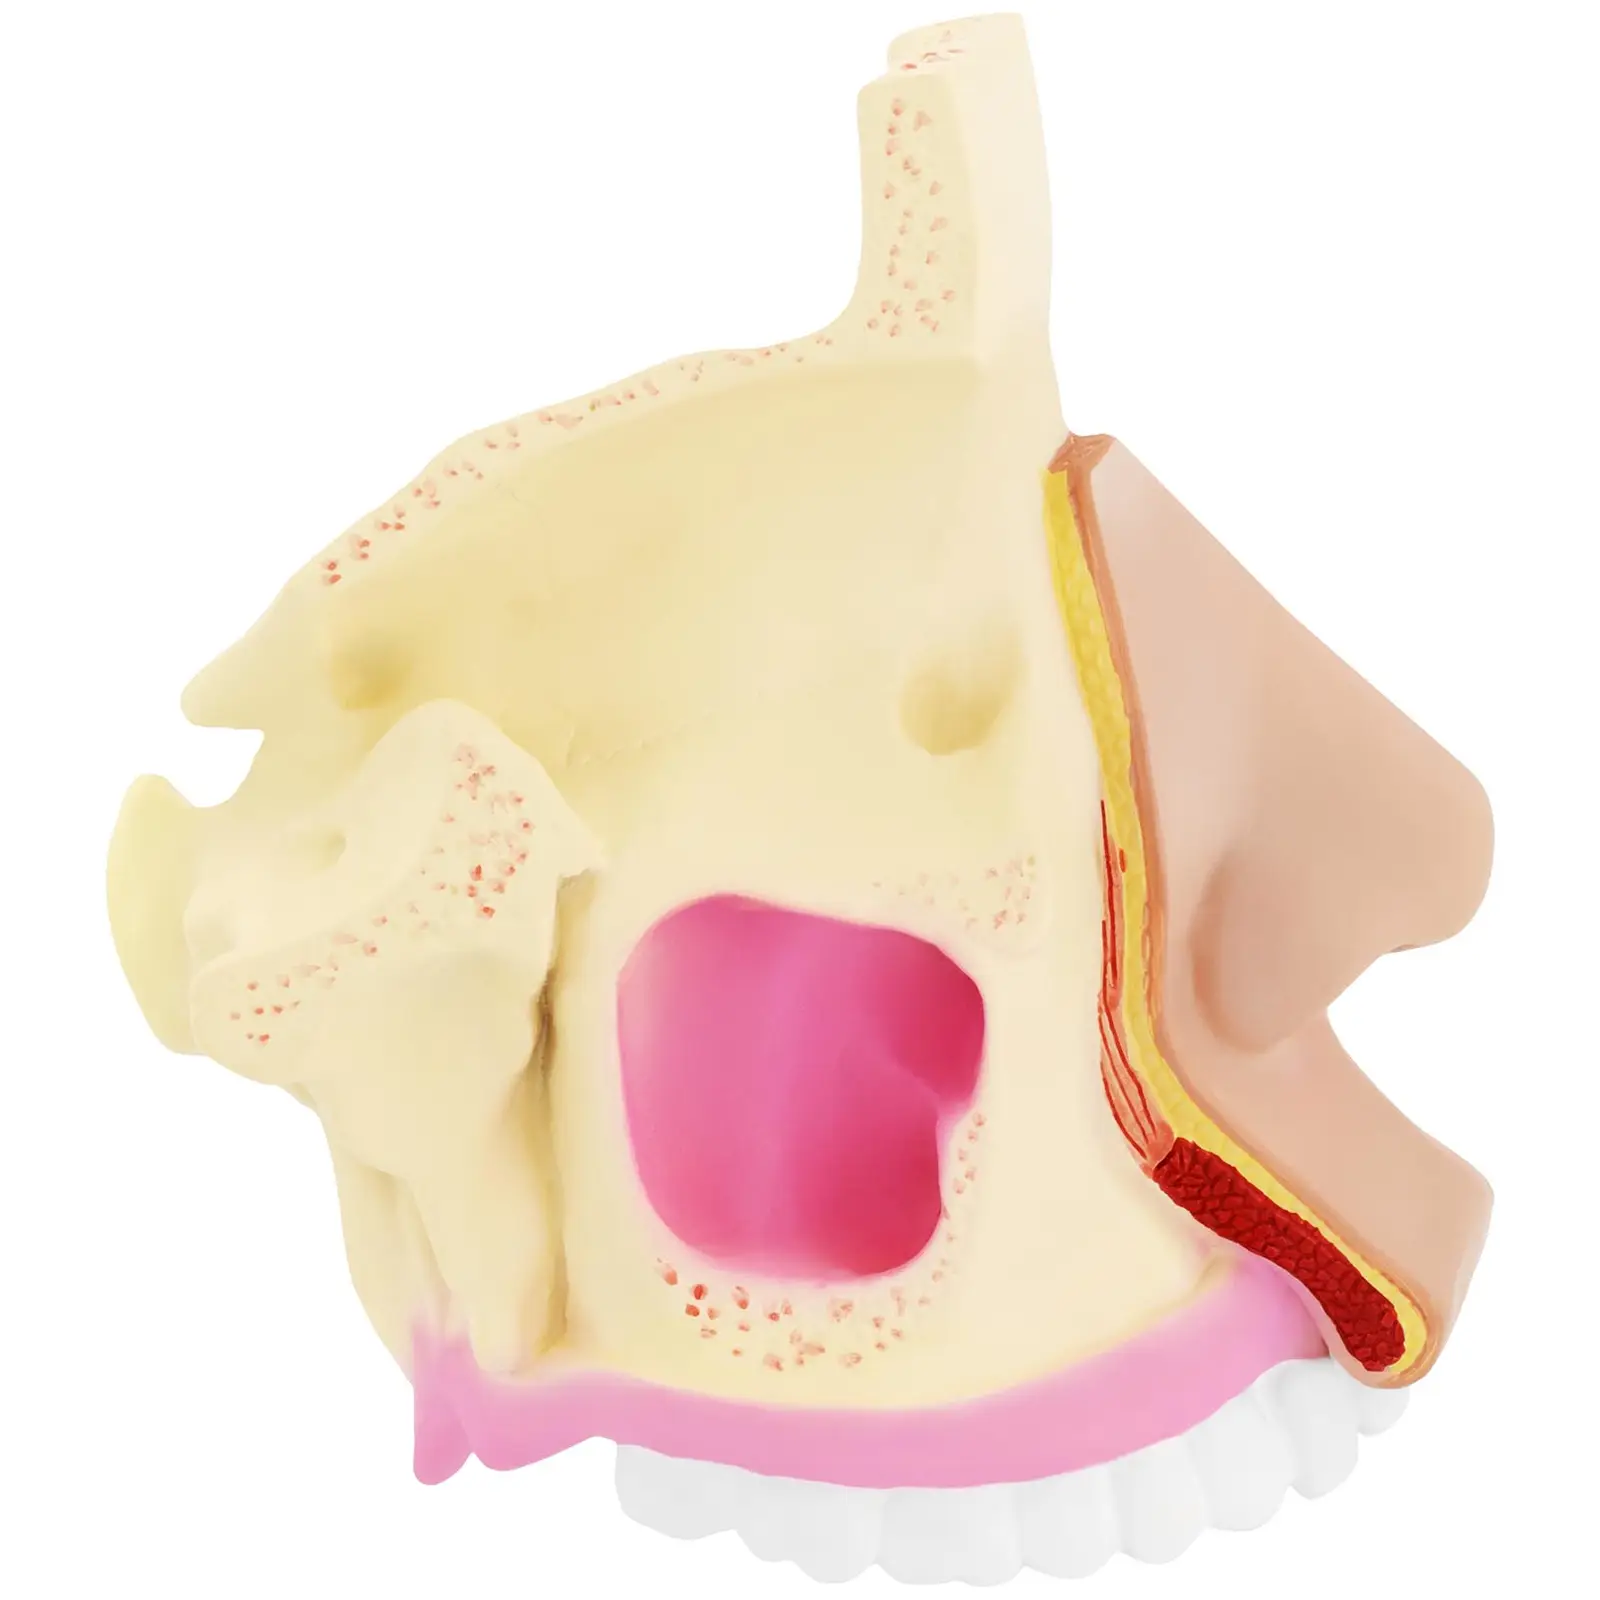 Modelo anatómico - fosas nasales - tamaño natural